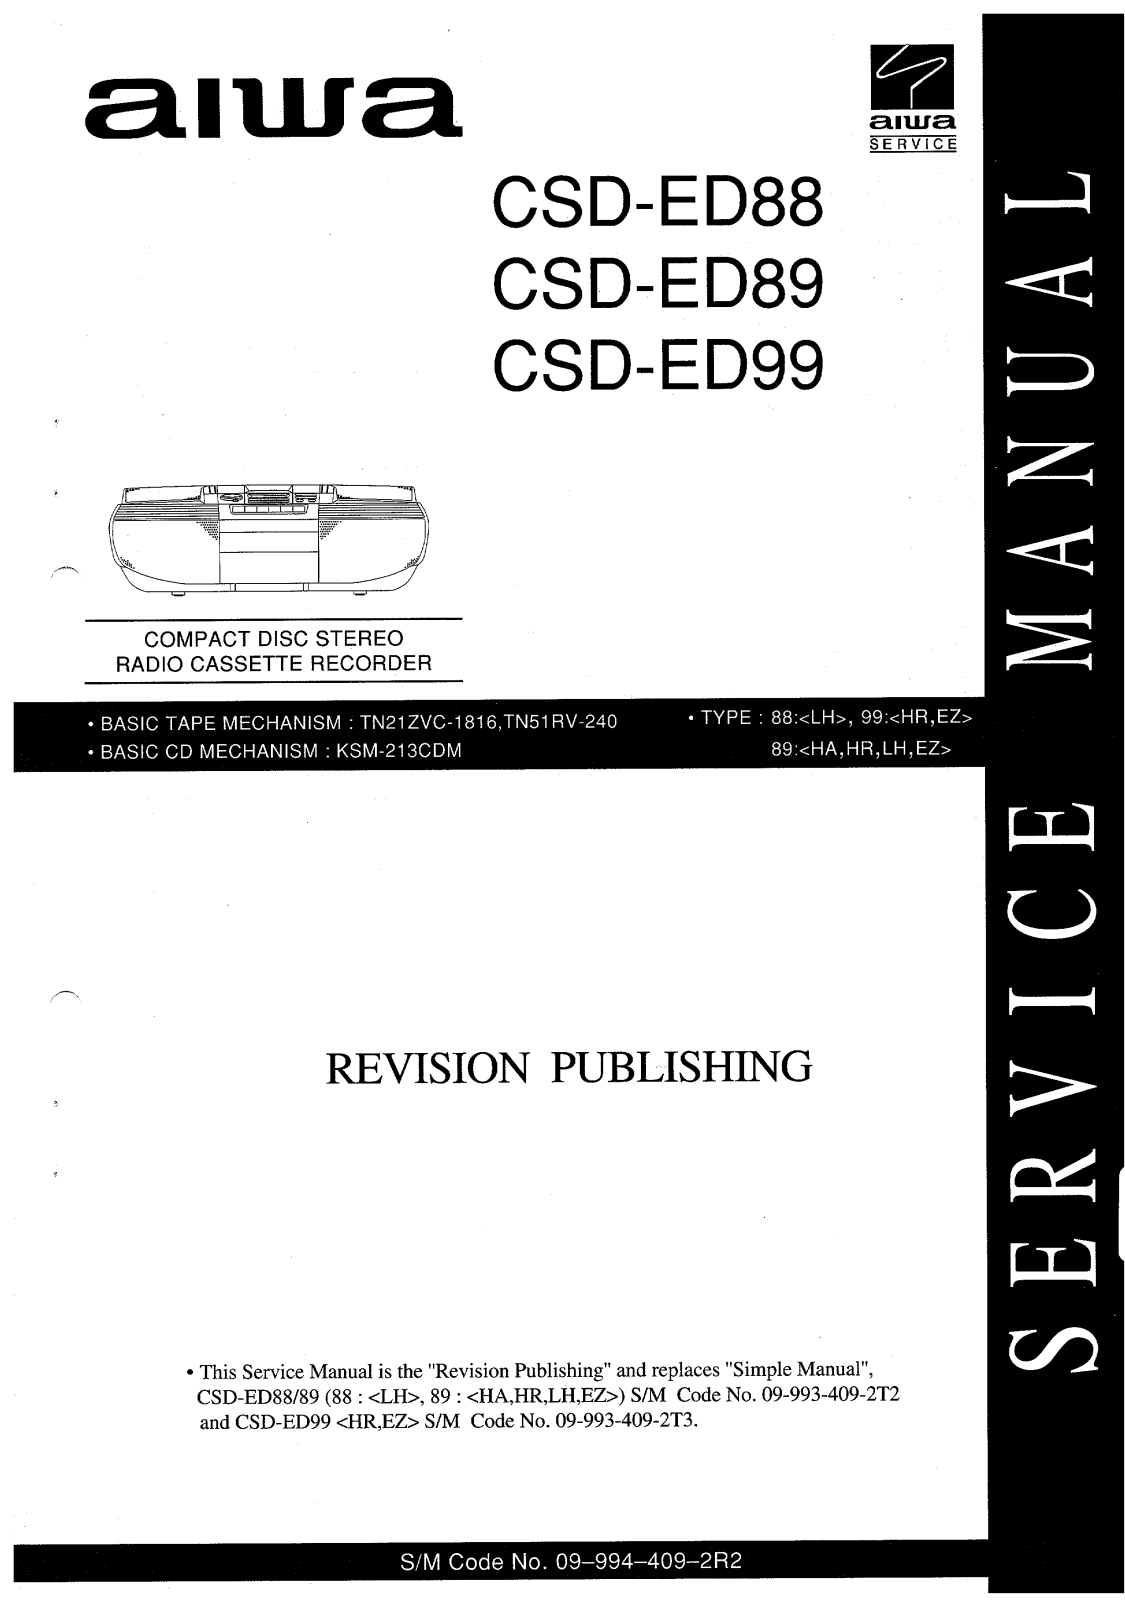 Aiwa CSDED-88, CSDED-89, CSDED-99 Service manual